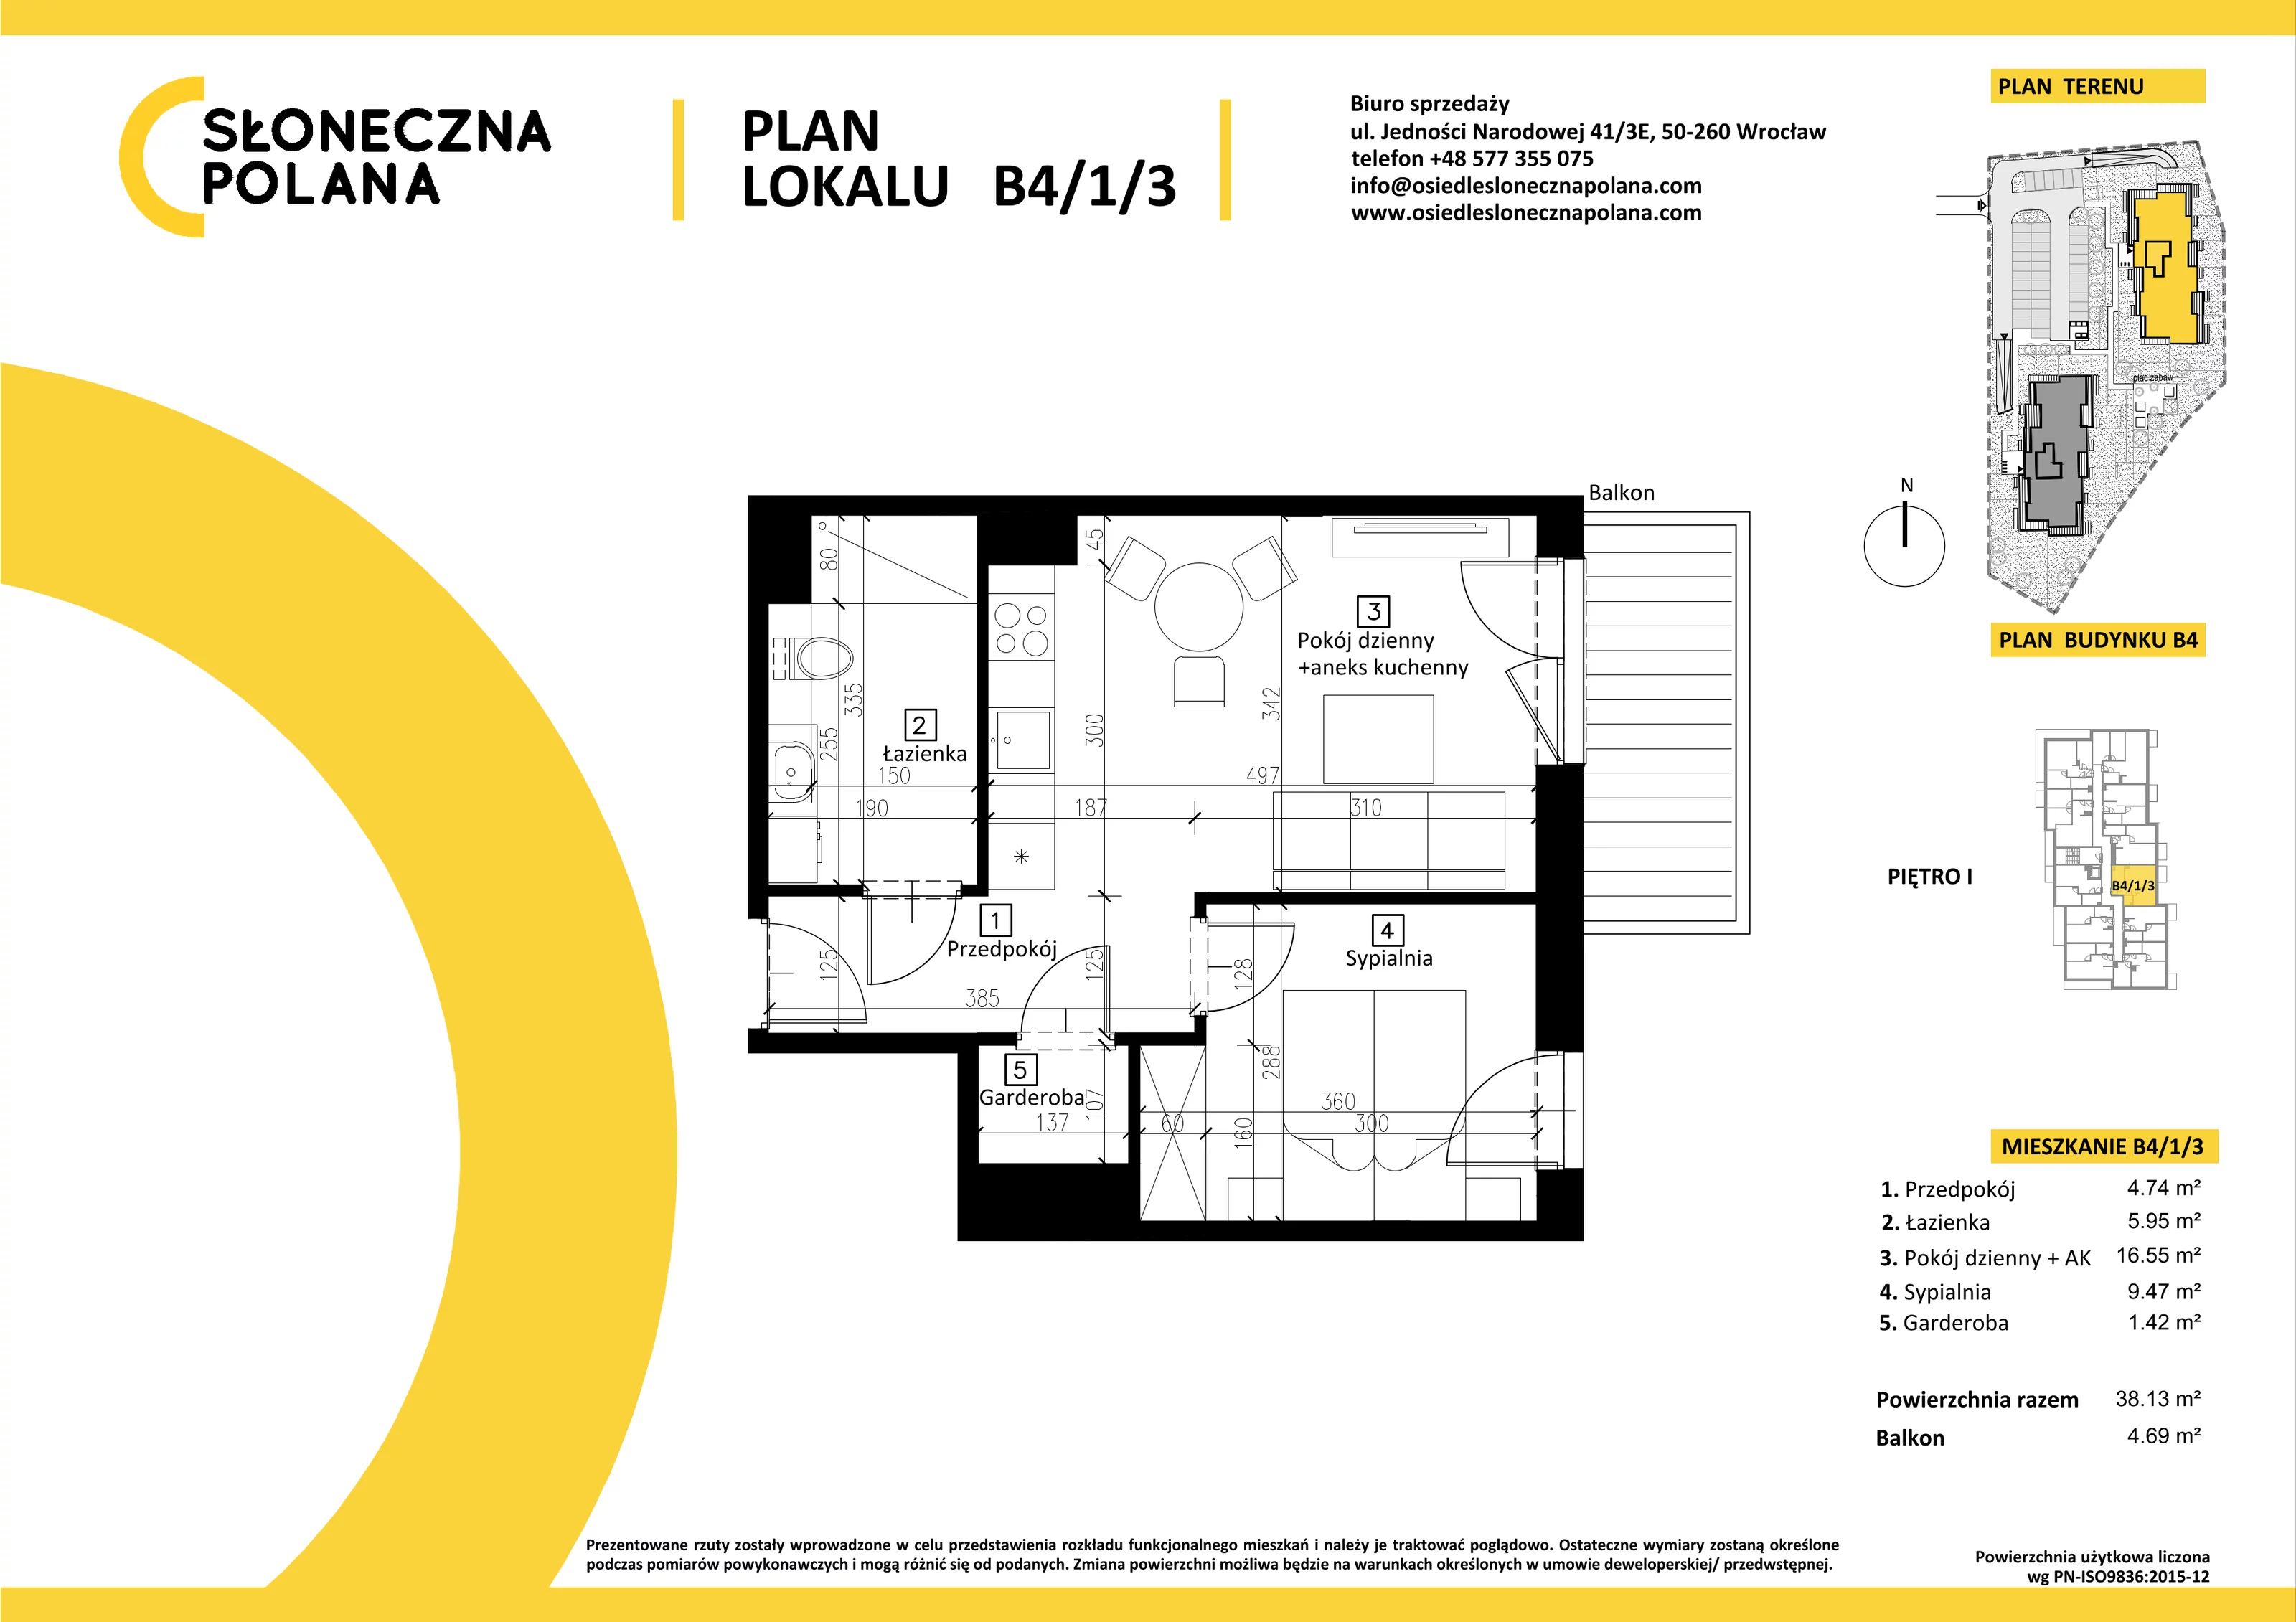 Mieszkanie 38,13 m², piętro 1, oferta nr B4/1/3, Słoneczna Polana, Kudowa-Zdrój, ul. Bluszczowa